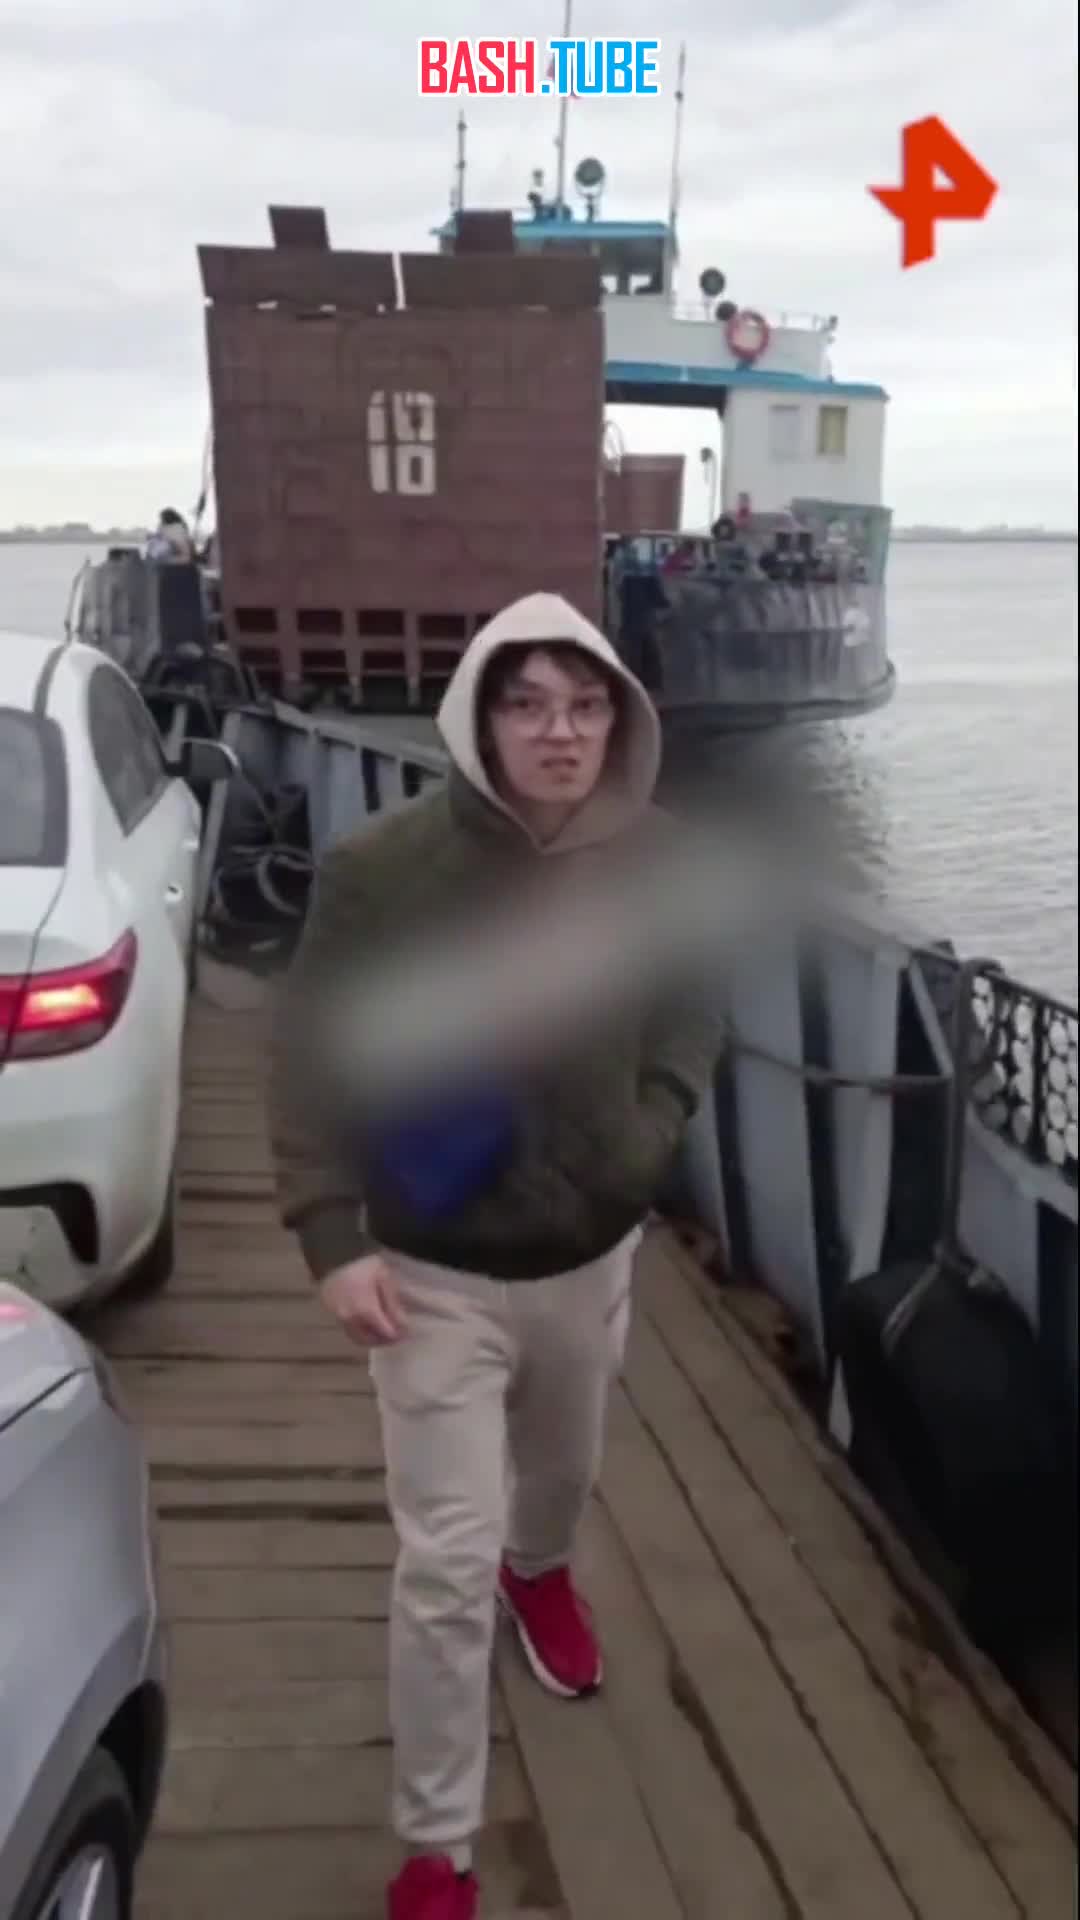  Видео столкновения двух паромов под Казанью опубликовали очевидцы в соцсетях